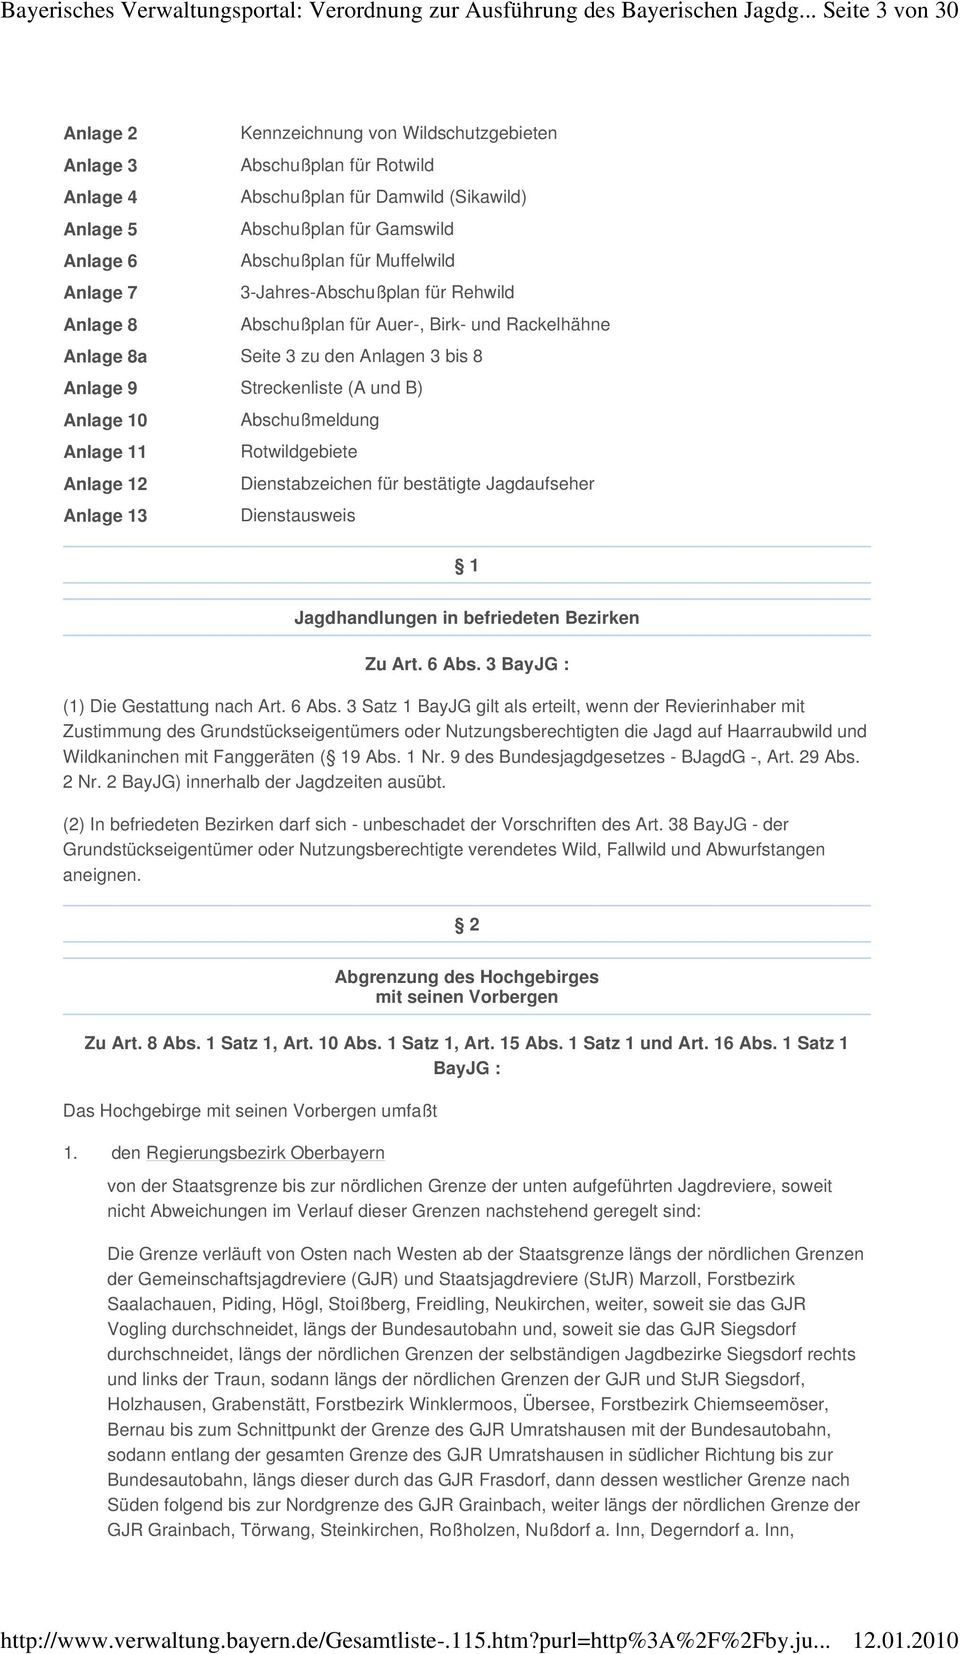 Muffelwild Anlage 7 3-Jahres-Abschußplan für Rehwild Anlage 8 Abschußplan für Auer-, Birk- und Rackelhähne Anlage 8a Seite 3 zu den Anlagen 3 bis 8 Anlage 9 Streckenliste (A und B) Anlage 10